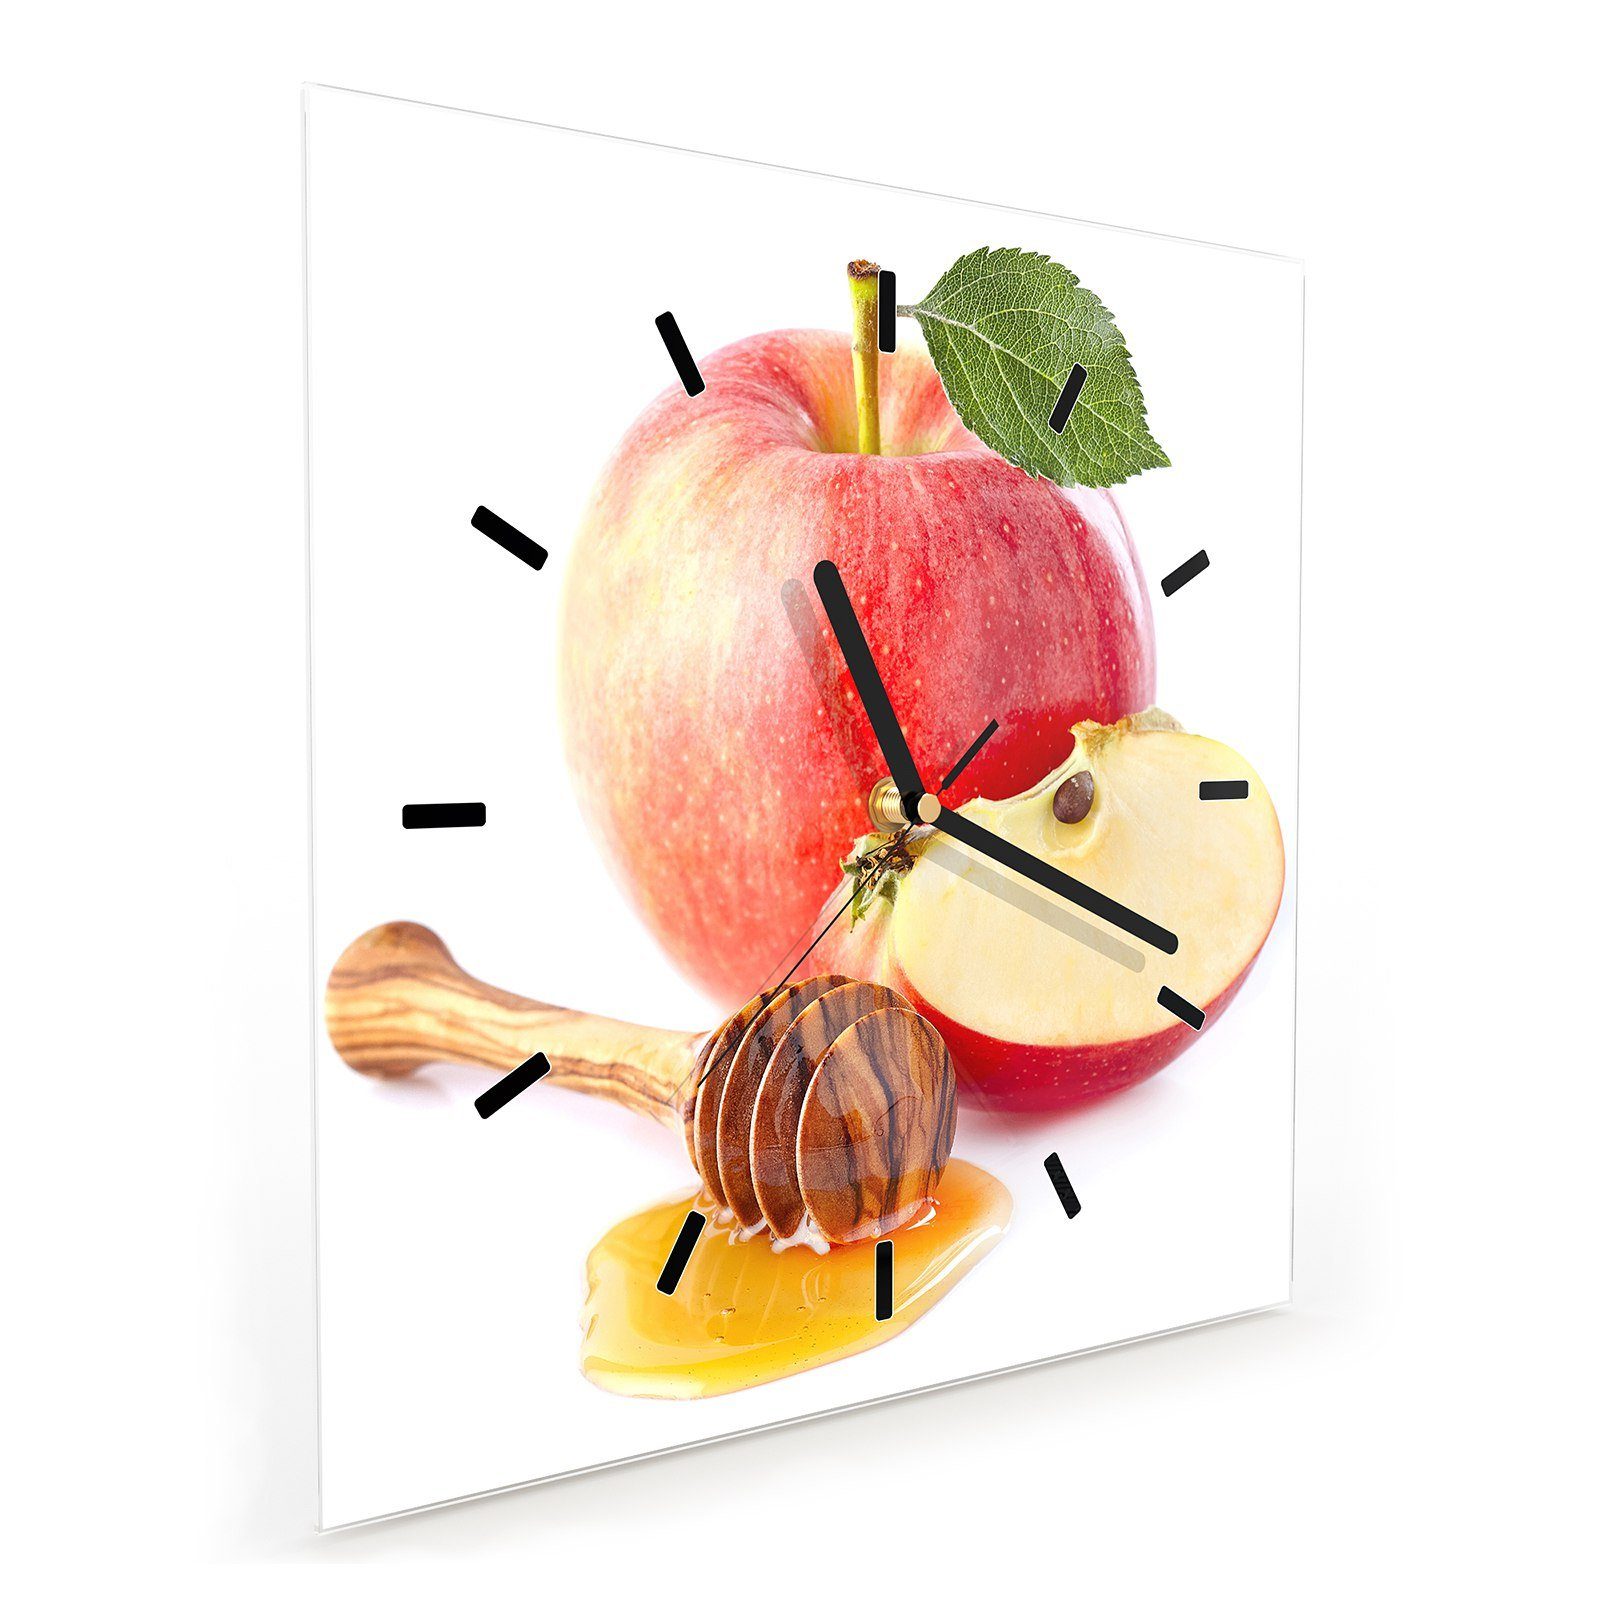 30 Wandkunst Motiv Glasuhr Wanduhr und x Apfel Honig Größe Primedeco Wanduhr 30 cm mit